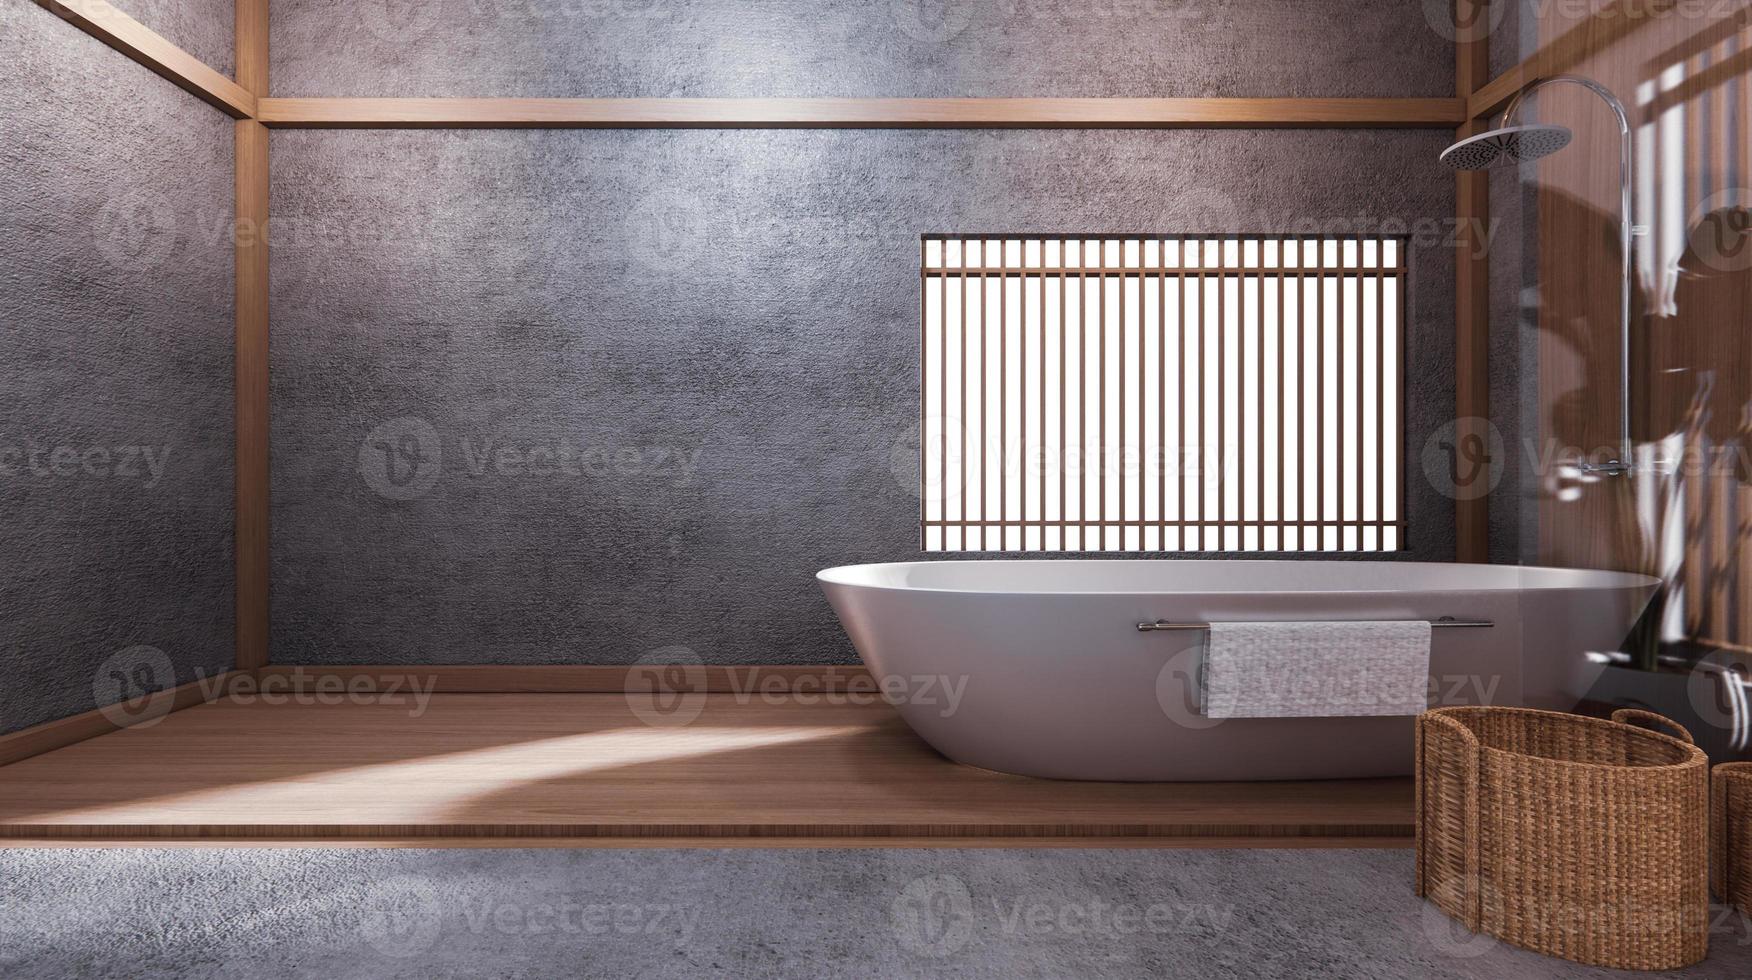 a banheira no banheiro japonês tem uma piscina ao lado da sala de design é espaçosa e iluminada em tons naturais. Renderização 3d foto